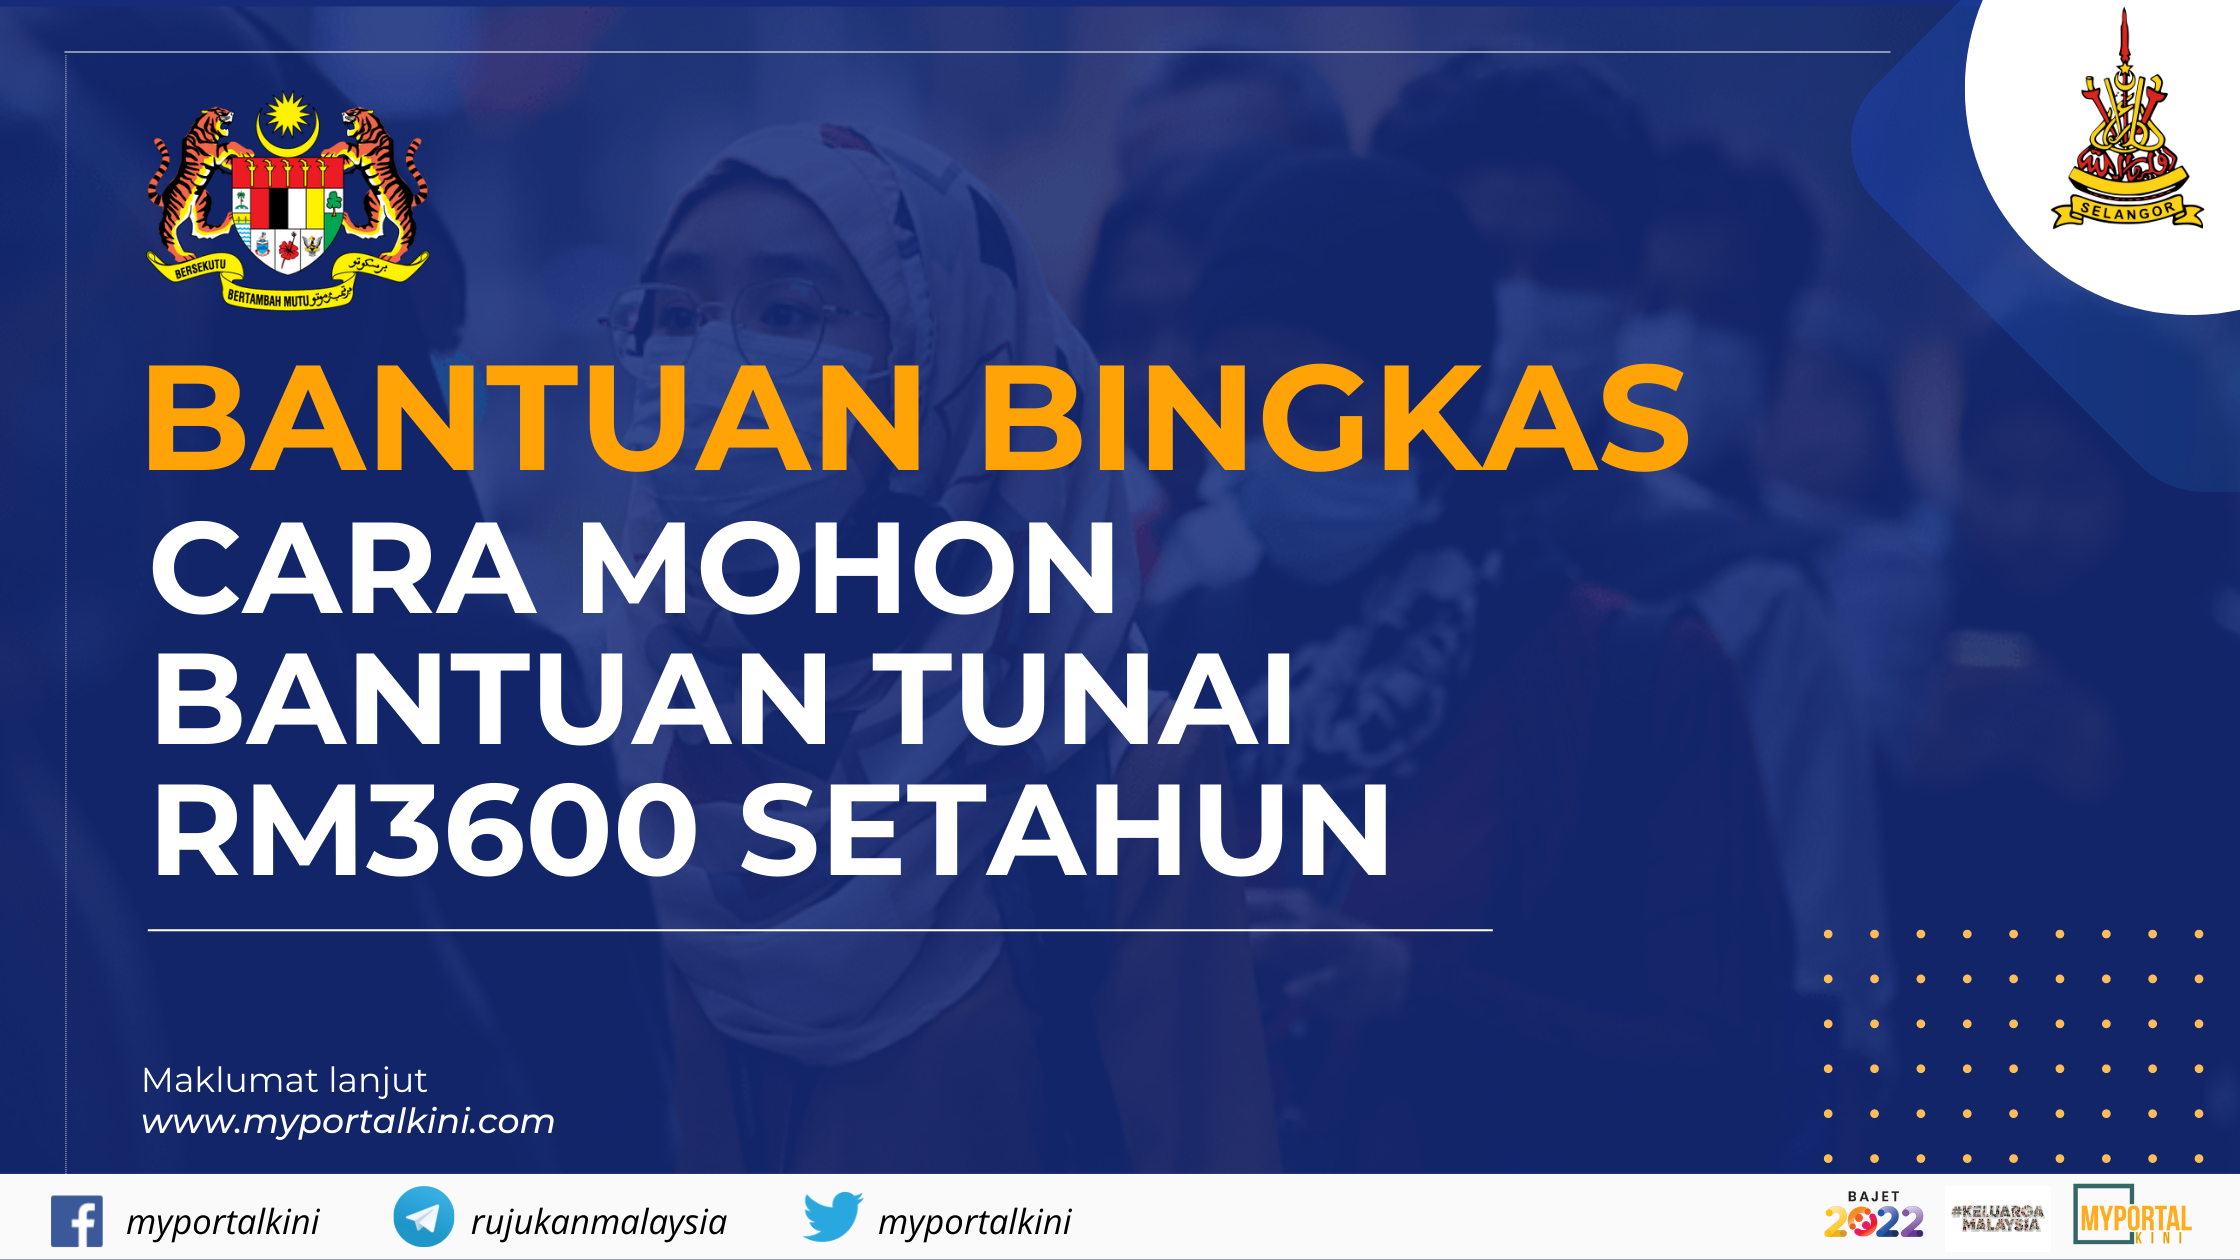 Bantuan Bingkas Selangor